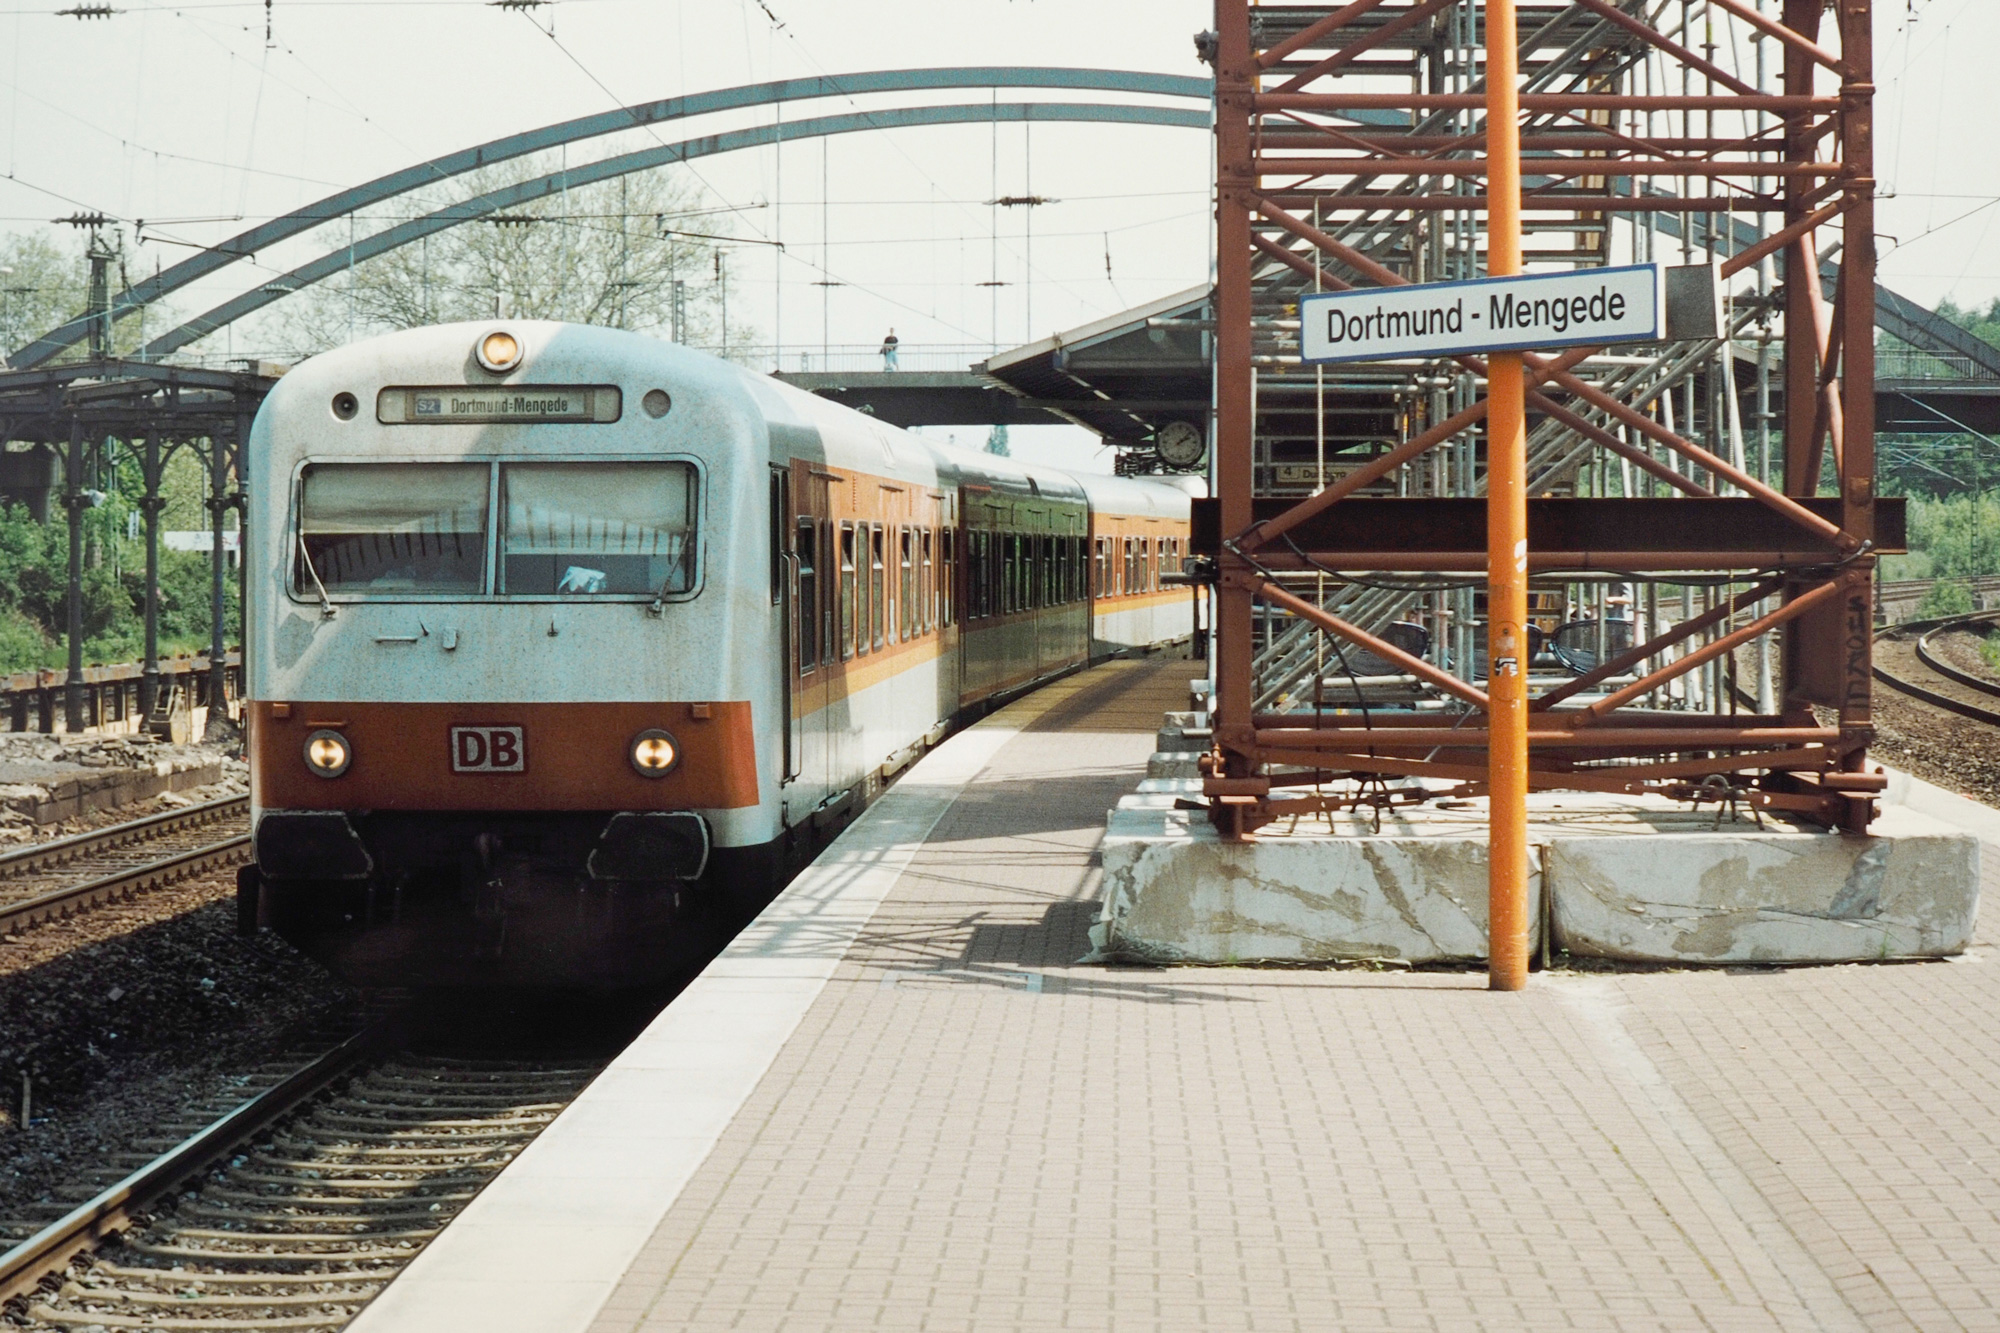 Die S-Bahn Rhein-Ruhr in den 1970er Jahren am Bahnhof Dortmund-Mengende